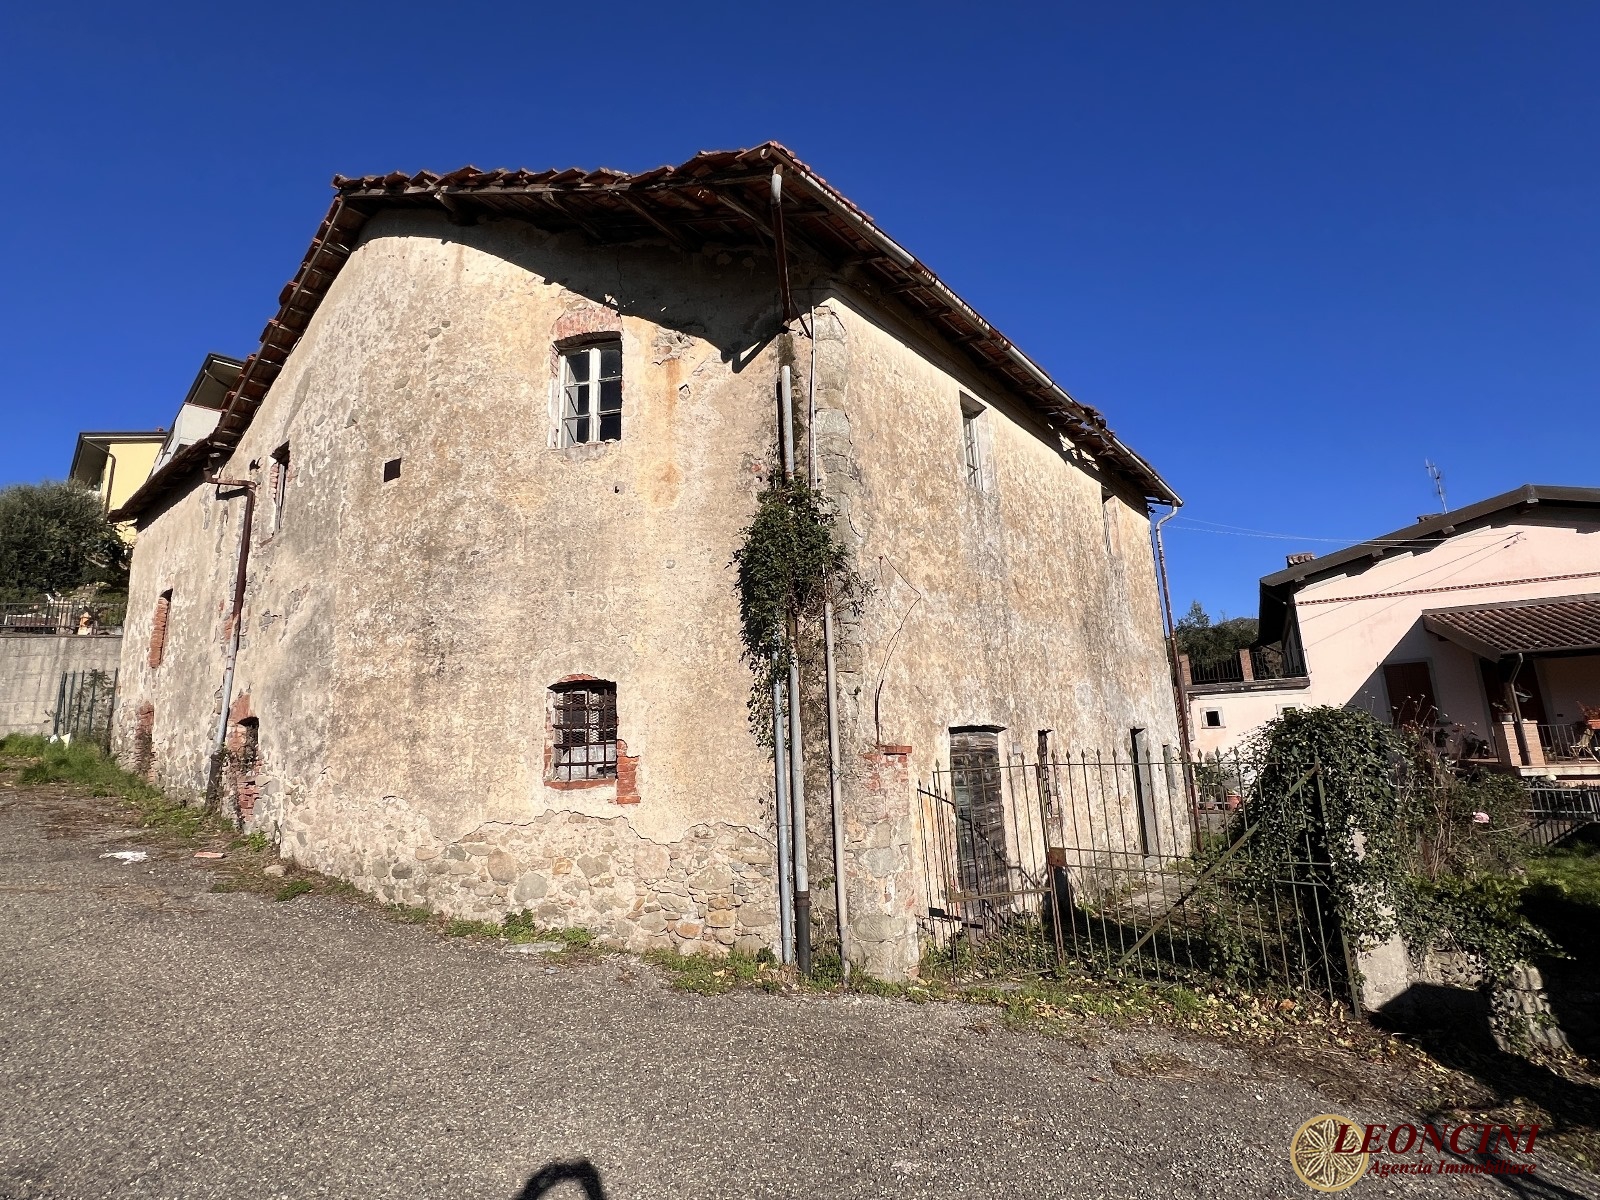 Rustico / Casale in vendita a Pontremoli, 6 locali, prezzo € 100.000 | PortaleAgenzieImmobiliari.it